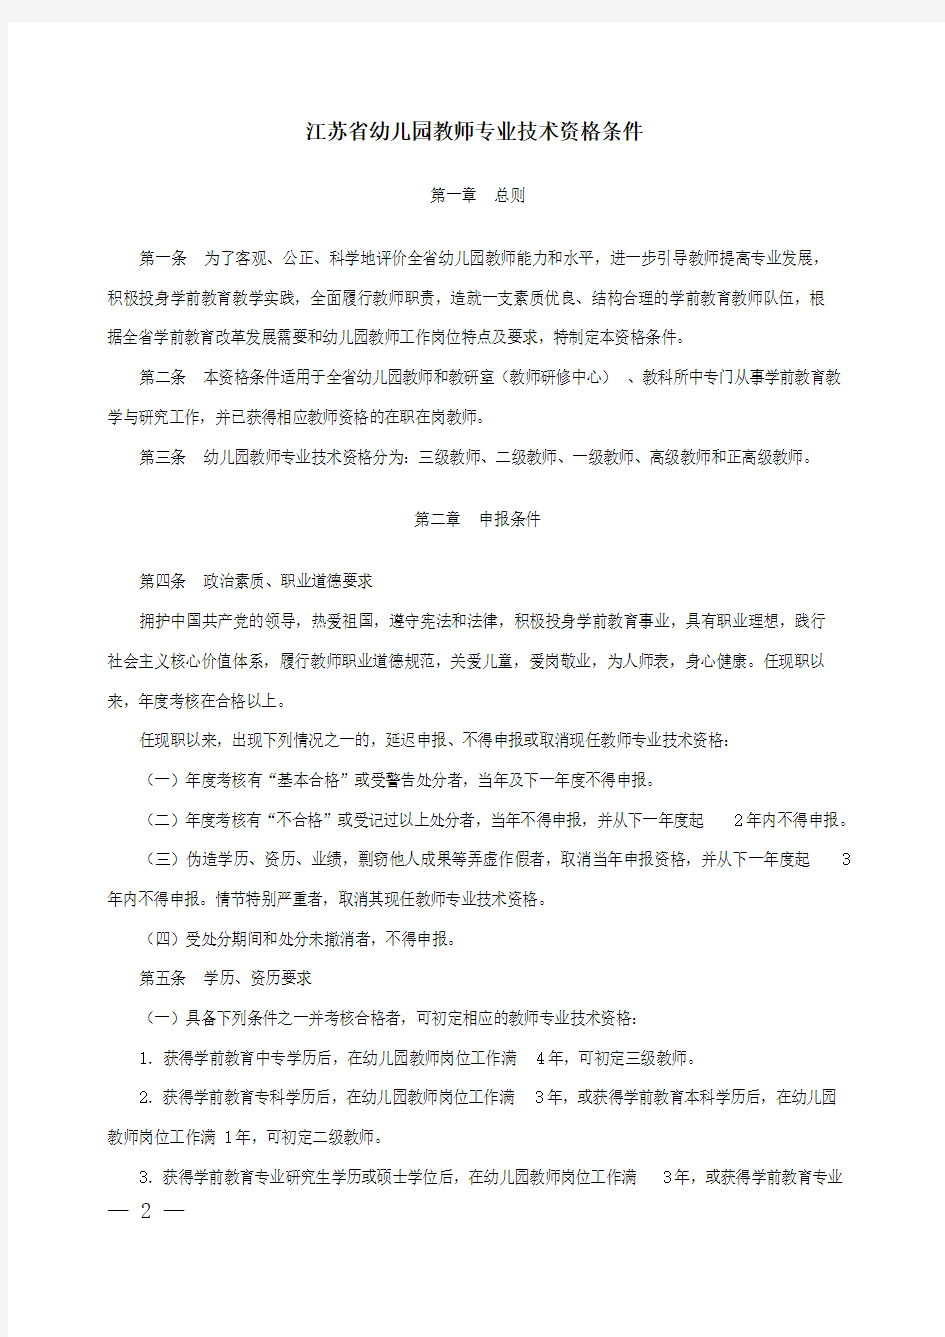 江苏省幼儿园教师专业技术资格条件(苏职称〔2013〕5号)